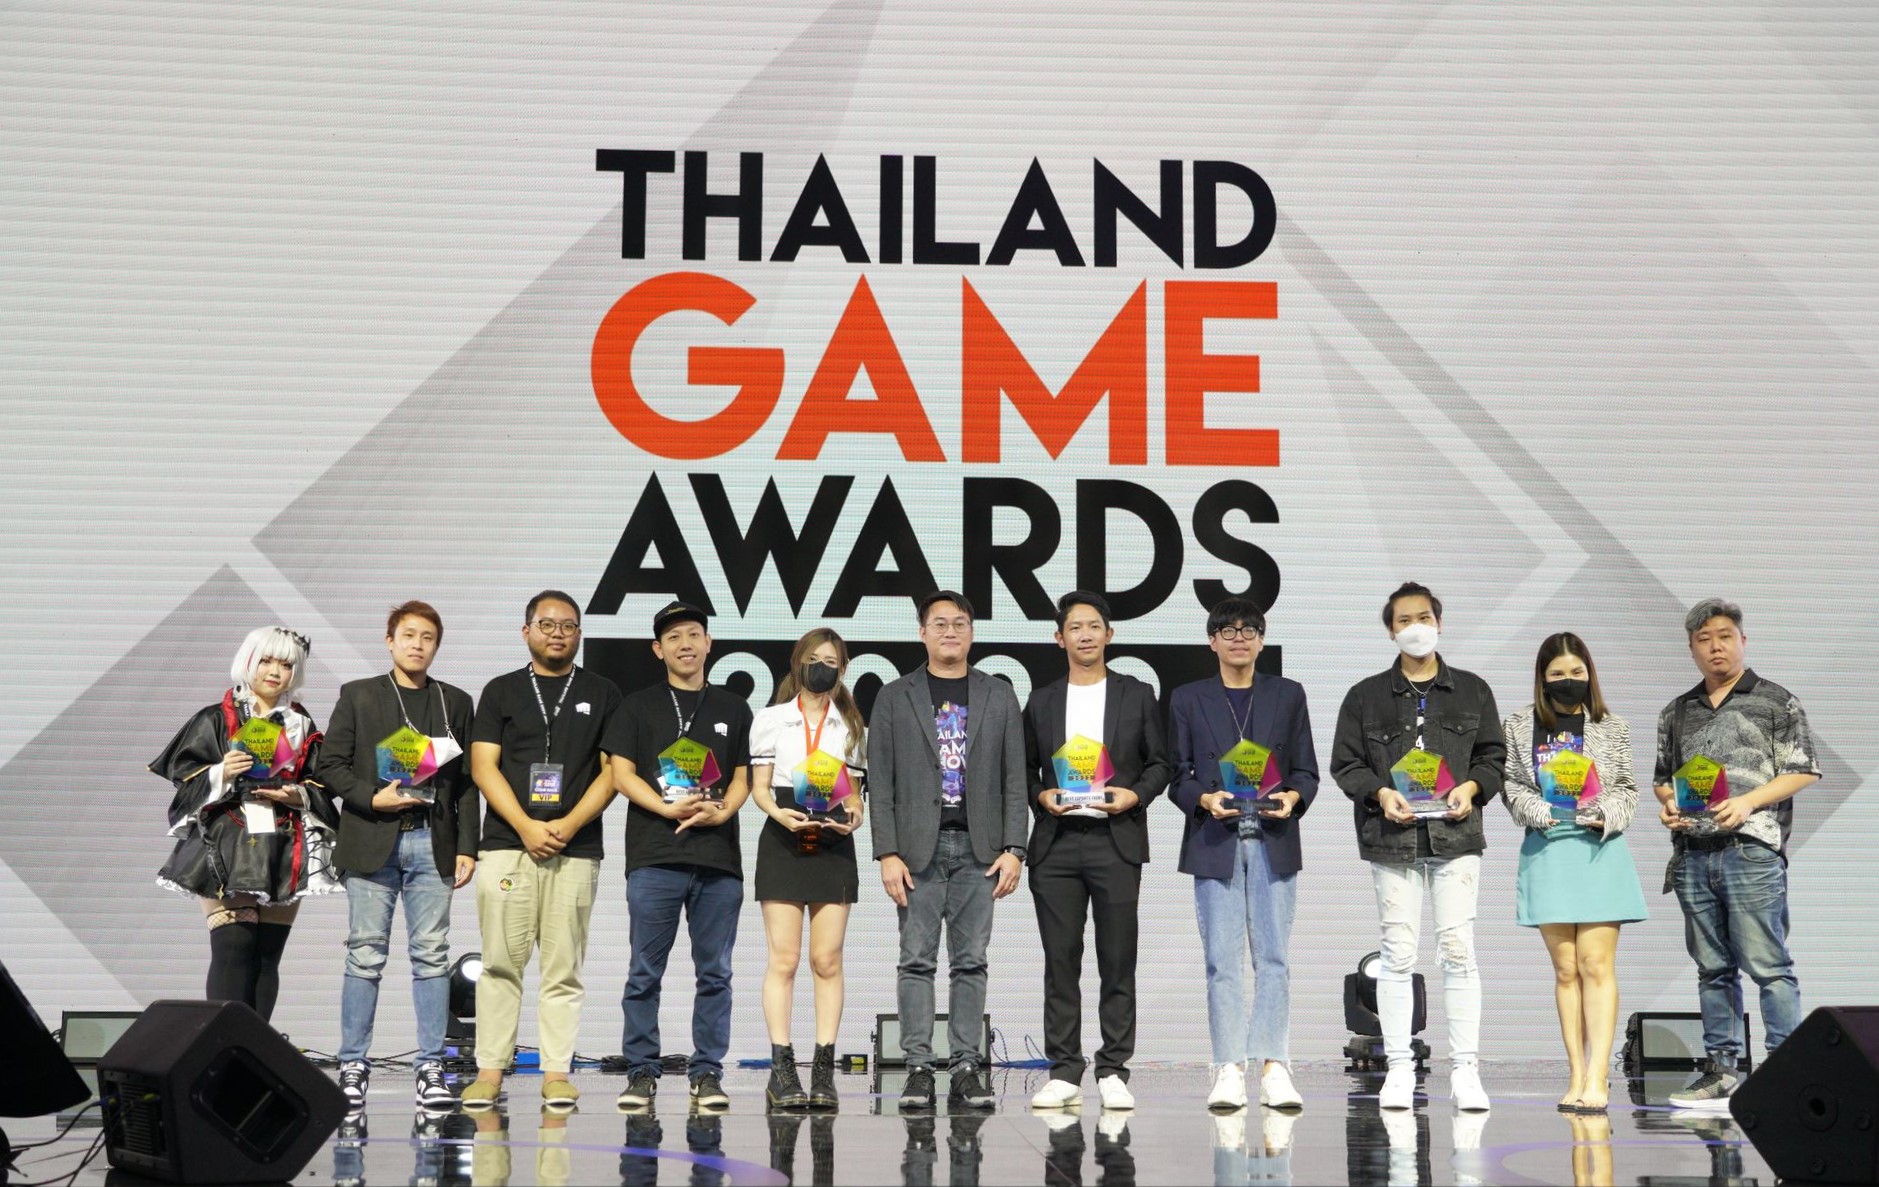 ประกาศผลรางวัล Thailand Game Awards 2022 สุดยอดเกมแห่งปีภายในงาน TGS 2022